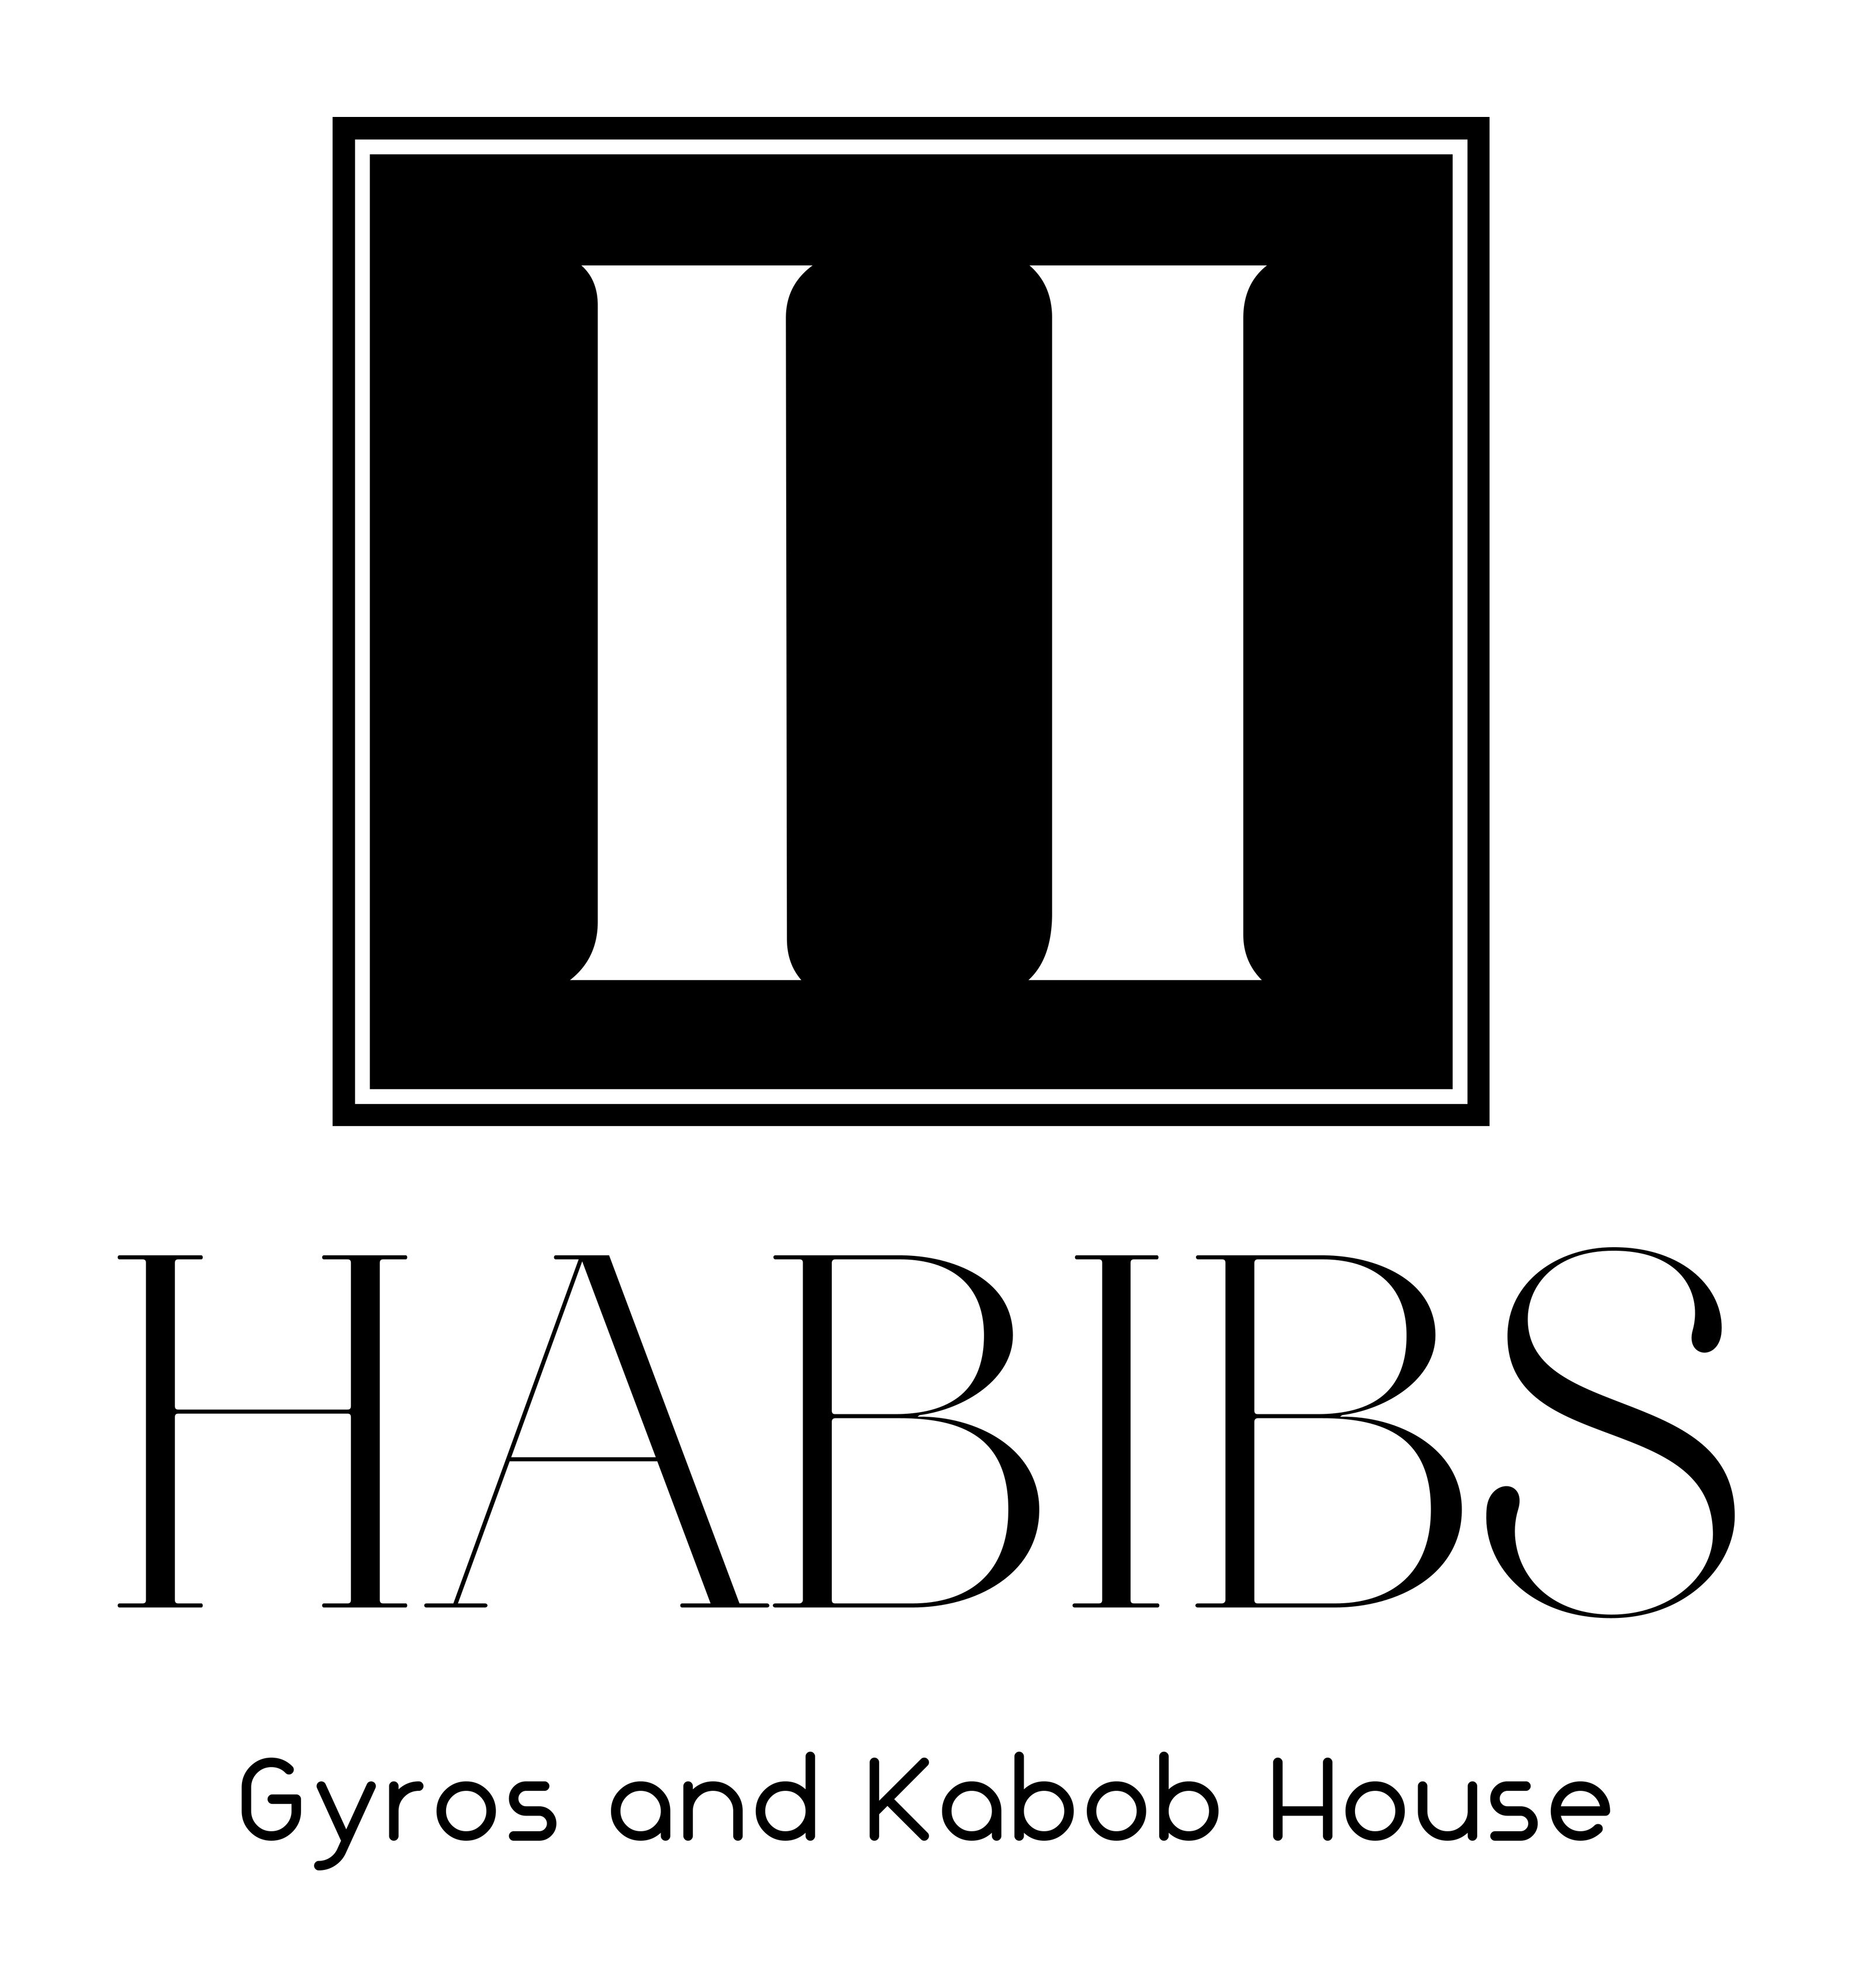 Habibi's Gyros & Kabob House